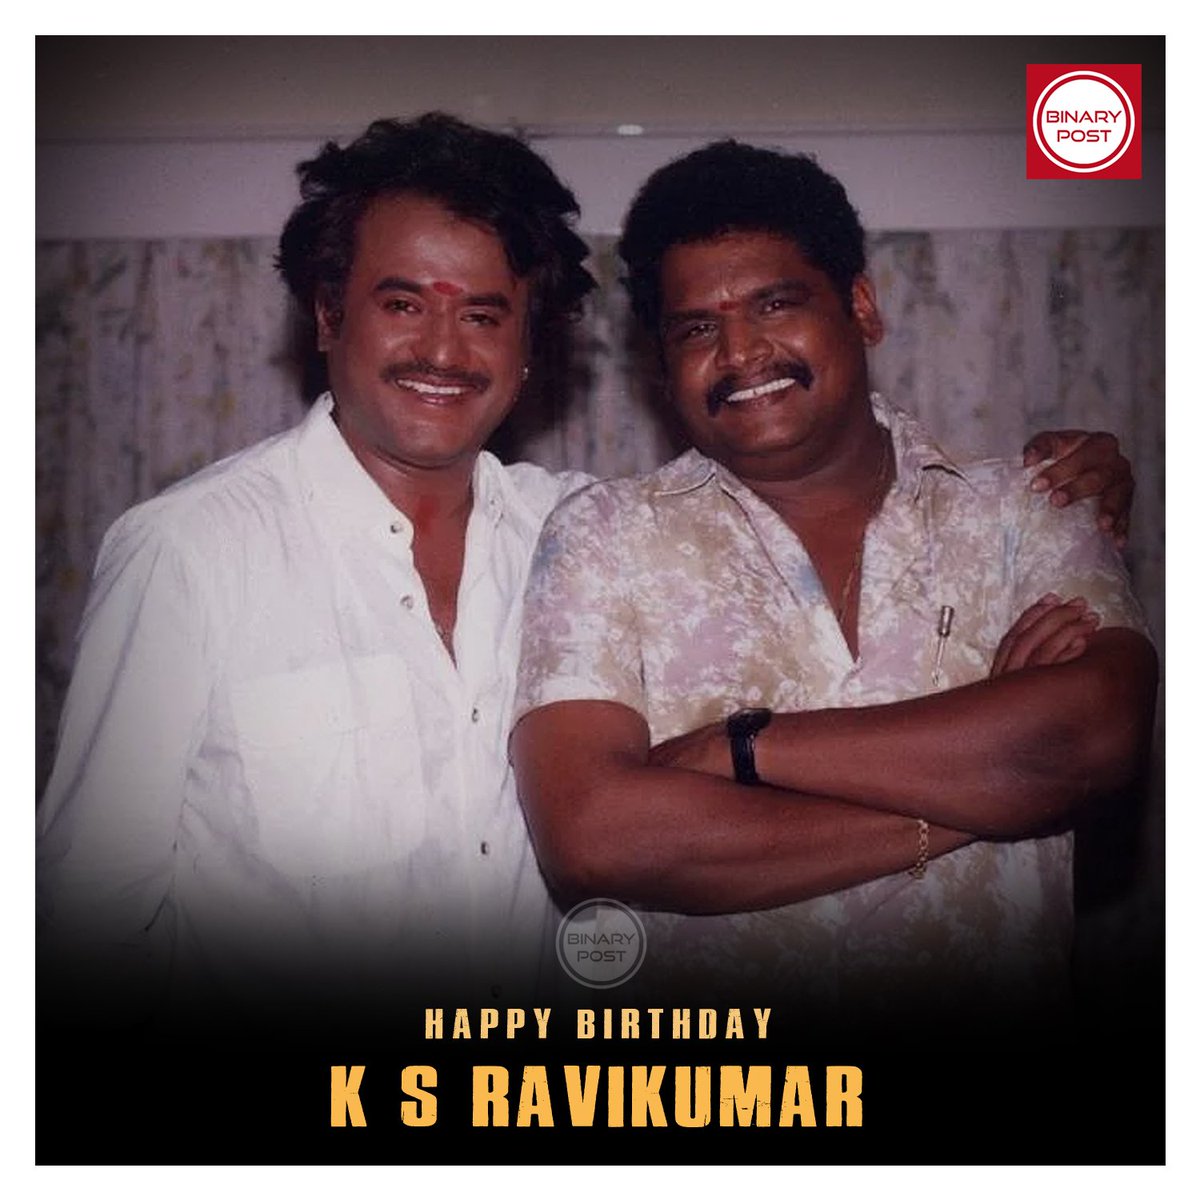 Happy Birthday K S Ravikumar sir...

#HBDKSRavikumar #Thalaivar 🤘 #Superstar #Rajinikanth #BinaryPost